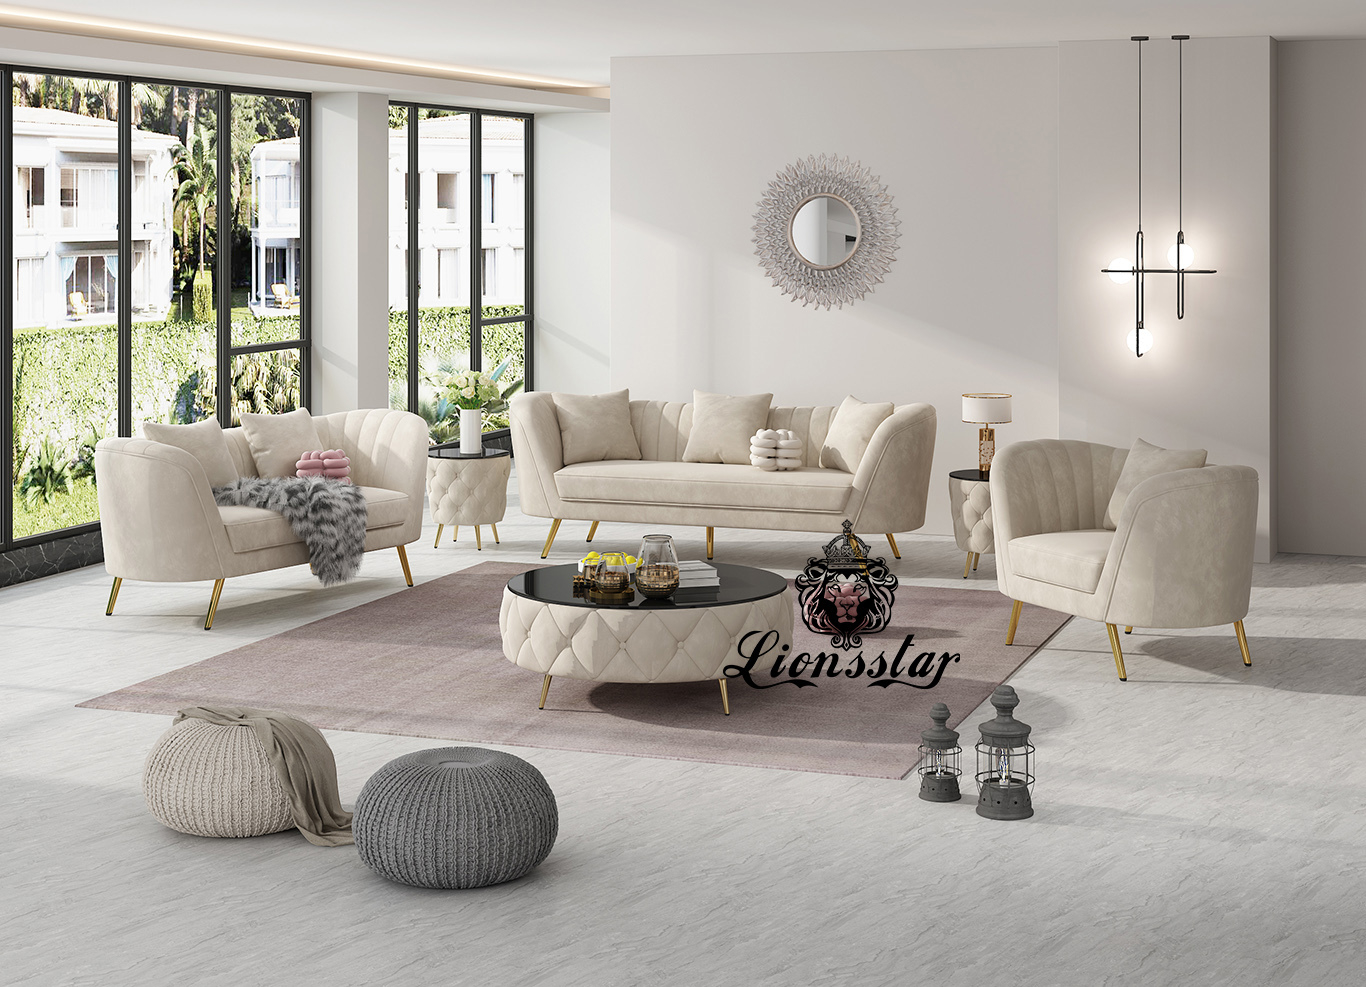 Luxus sofa - Die qualitativsten Luxus sofa ausführlich verglichen!